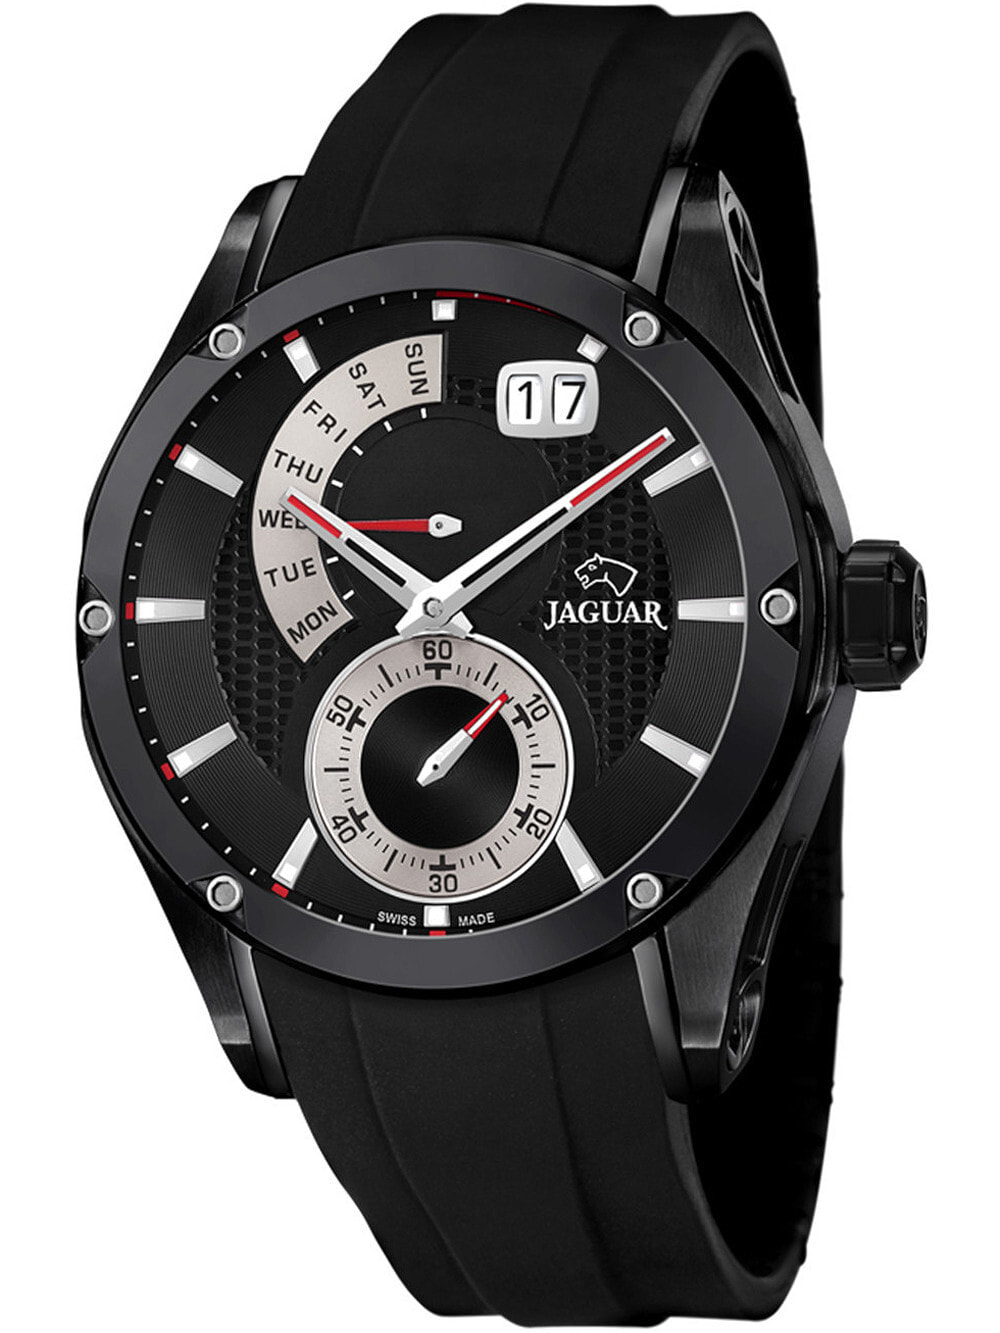 Мужские наручные часы с черным силиконовым ремешком Jaguar J681/2 Special Edition Herren 45mm 10ATM